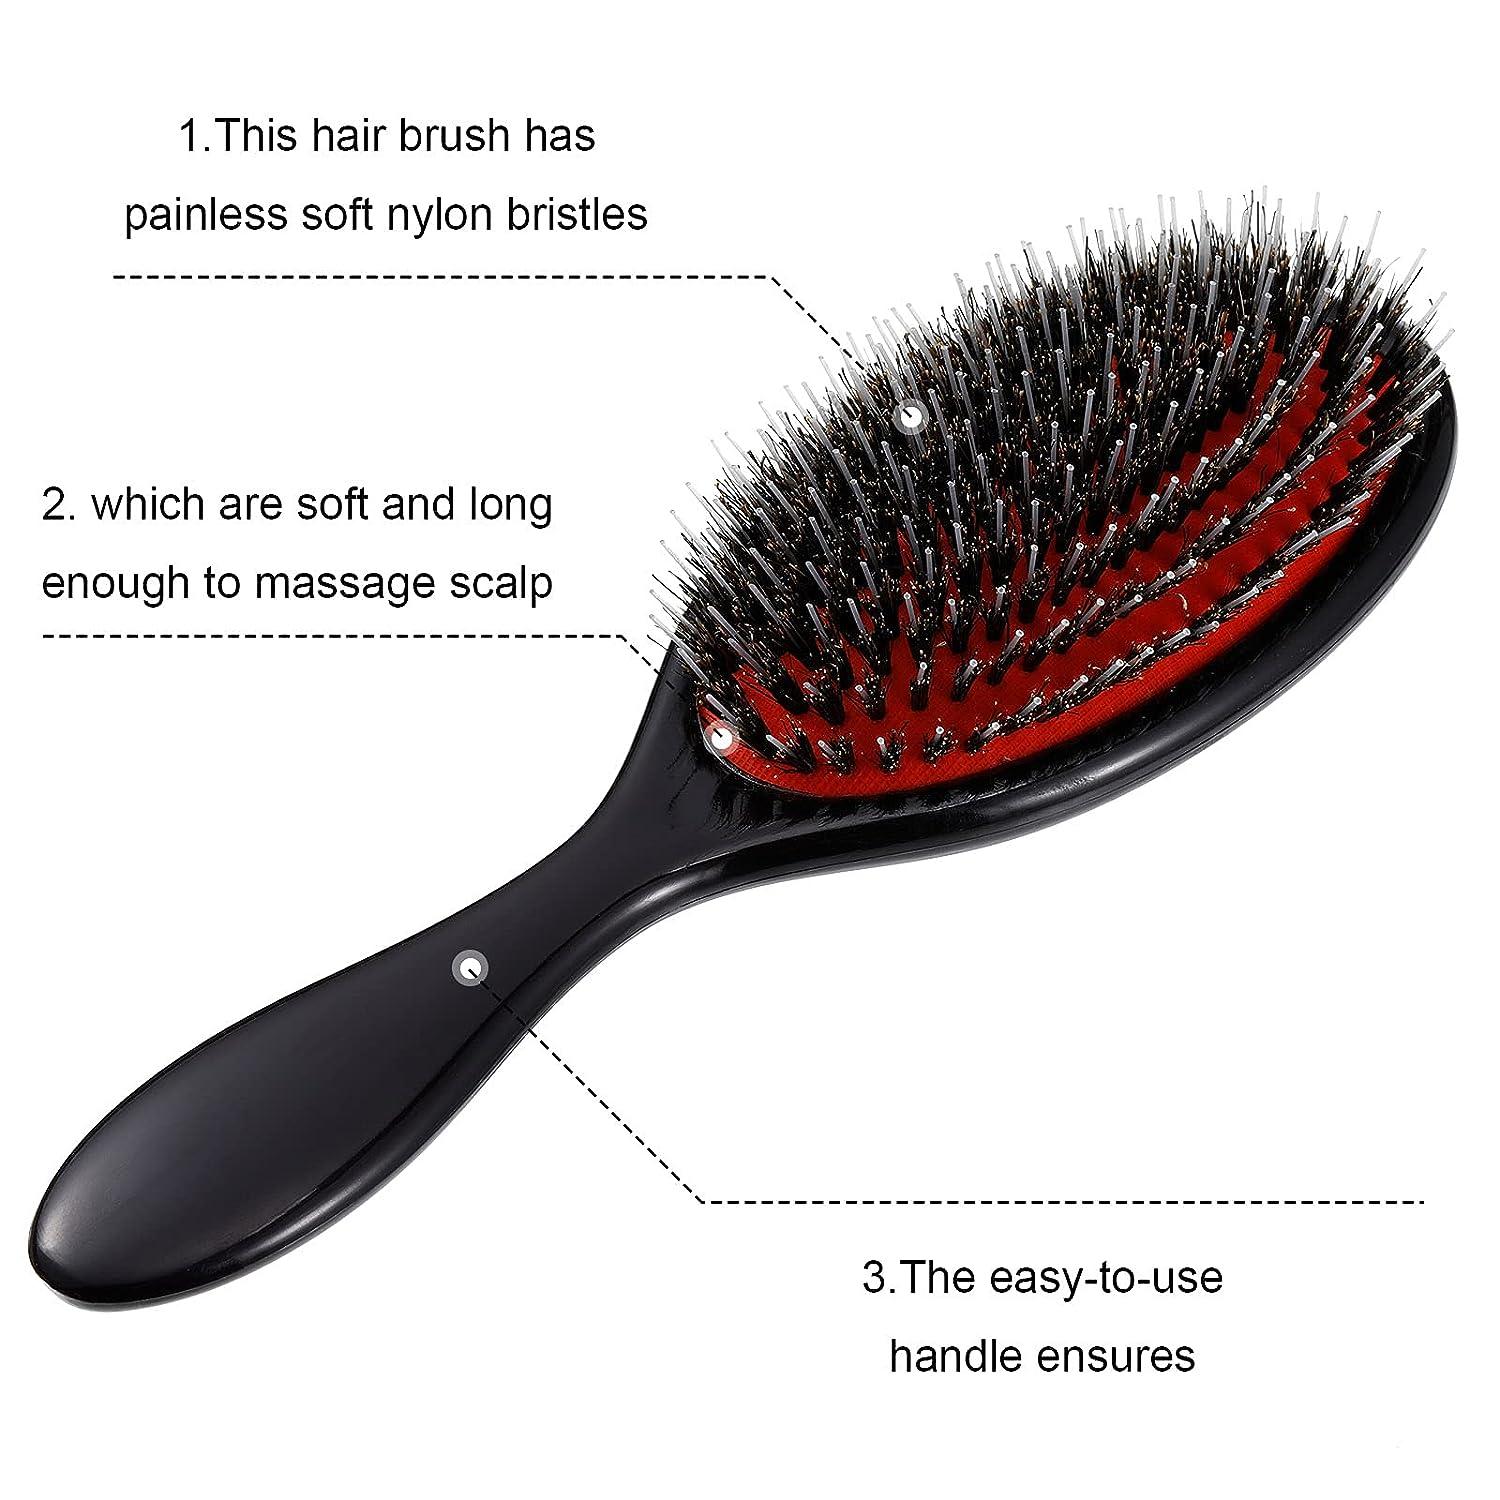 Hair Brush, Boar Bristle Hair Brushes for Women men Kid,Boar&Nylon Bristle  Brush